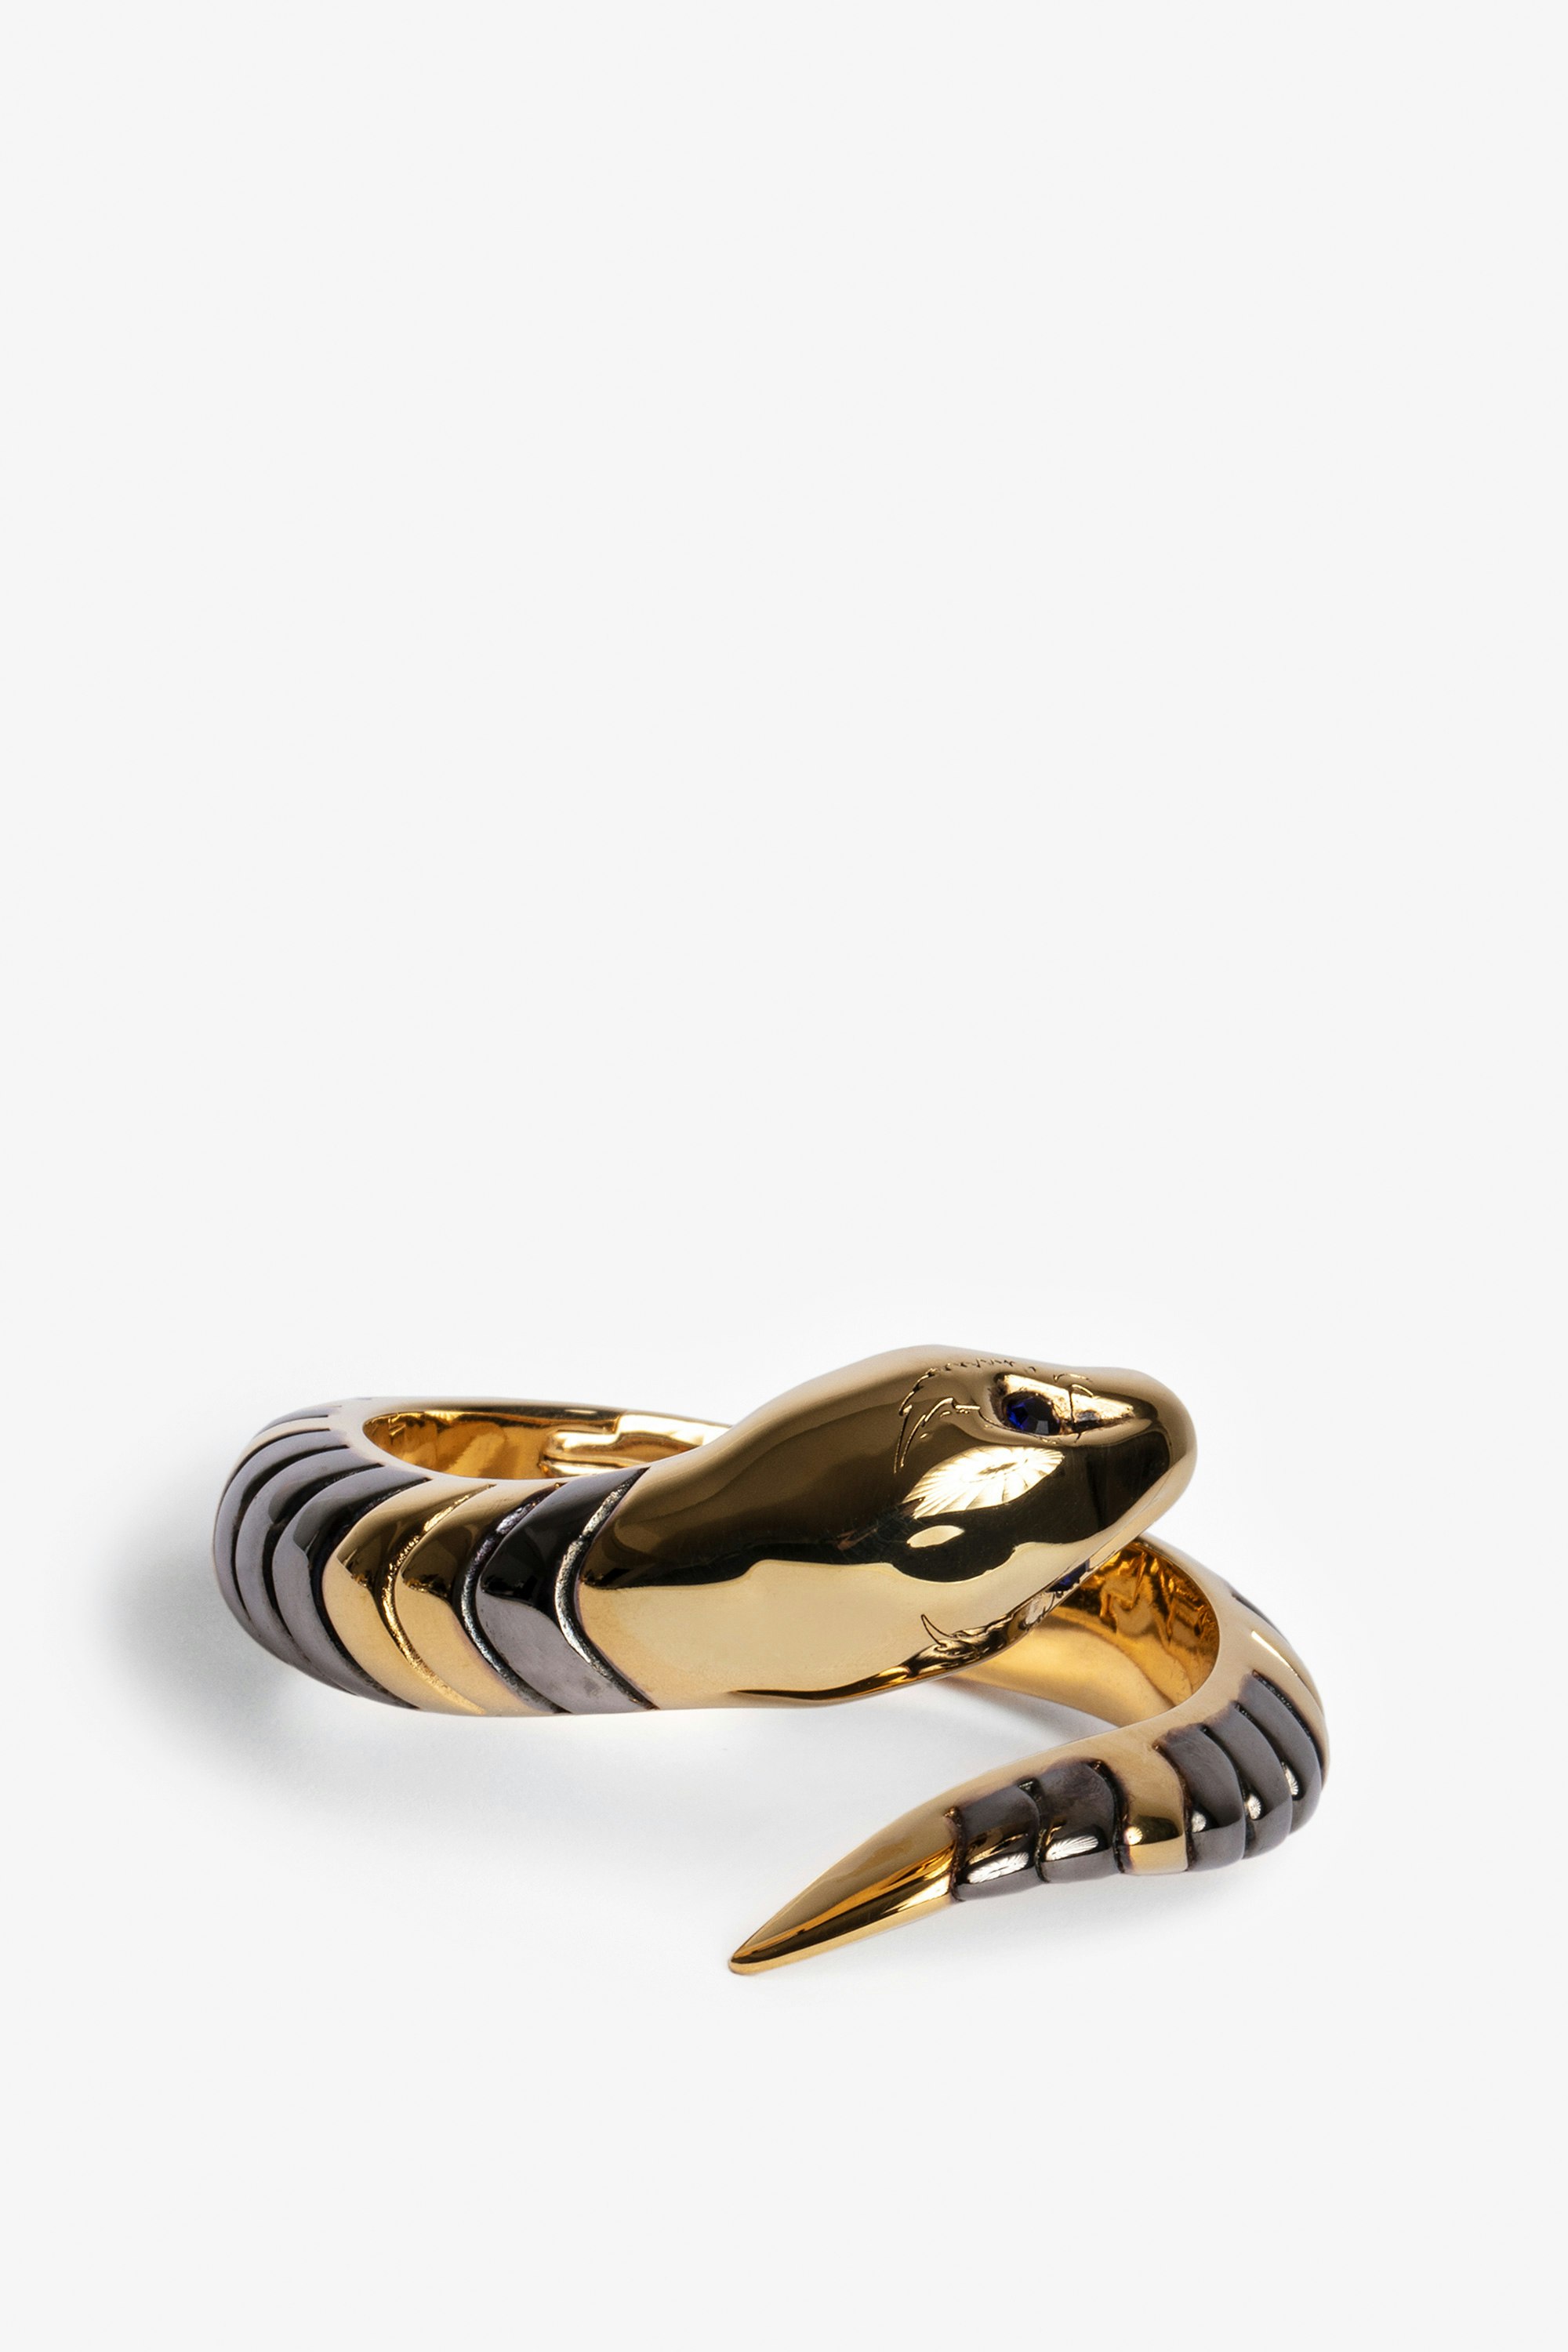 Snake Bracelet Women’s gold-tone brass bracelet